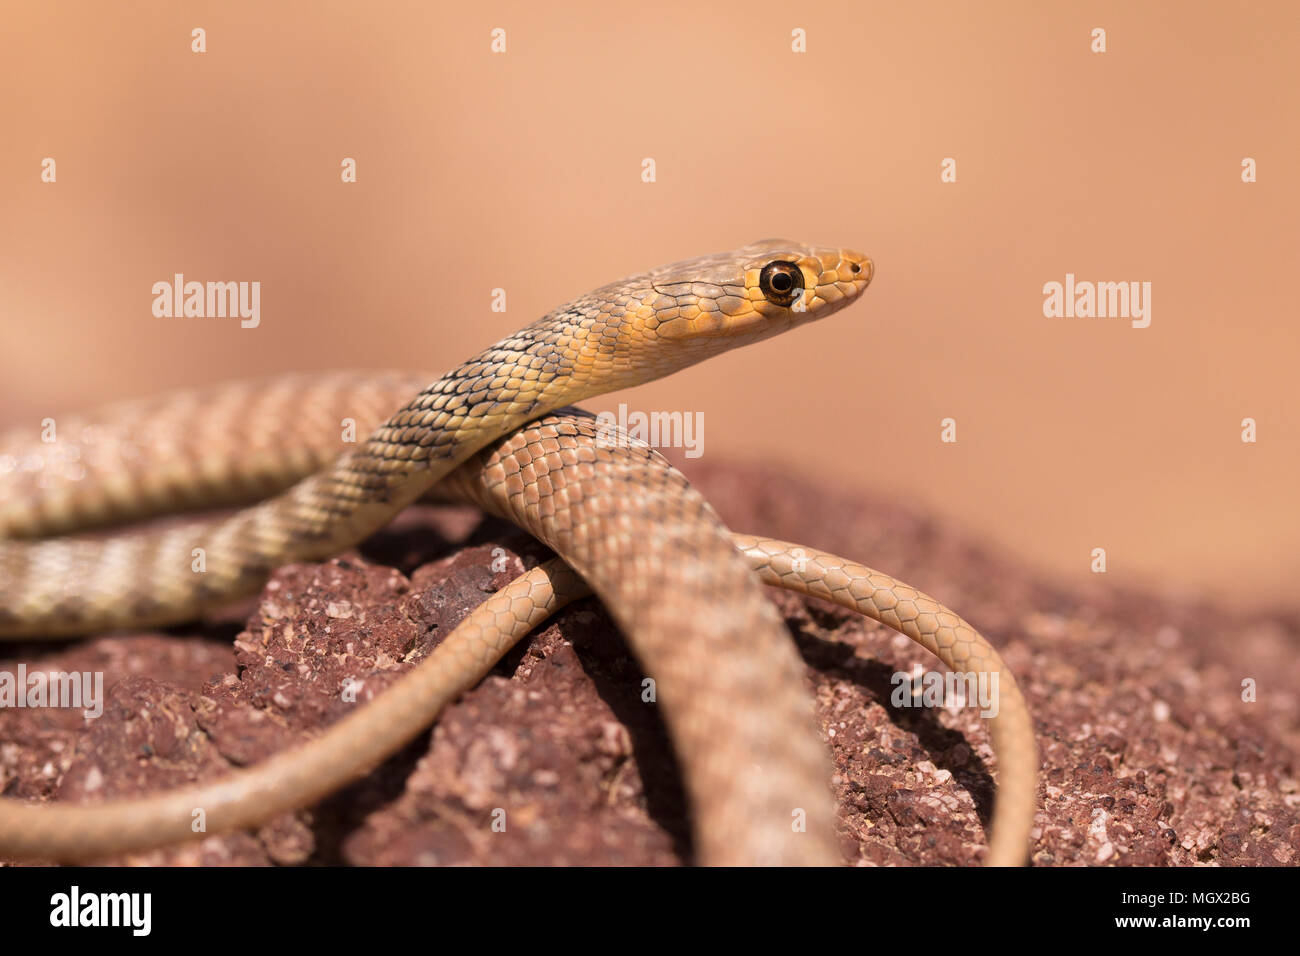 Braid serpente o Jan Il Cliff Racer (Platyceps rhodorachis) è una specie di serpente trovato in Asia centrale e in Medio Oriente. Fotografato in Israele in Ma Foto Stock